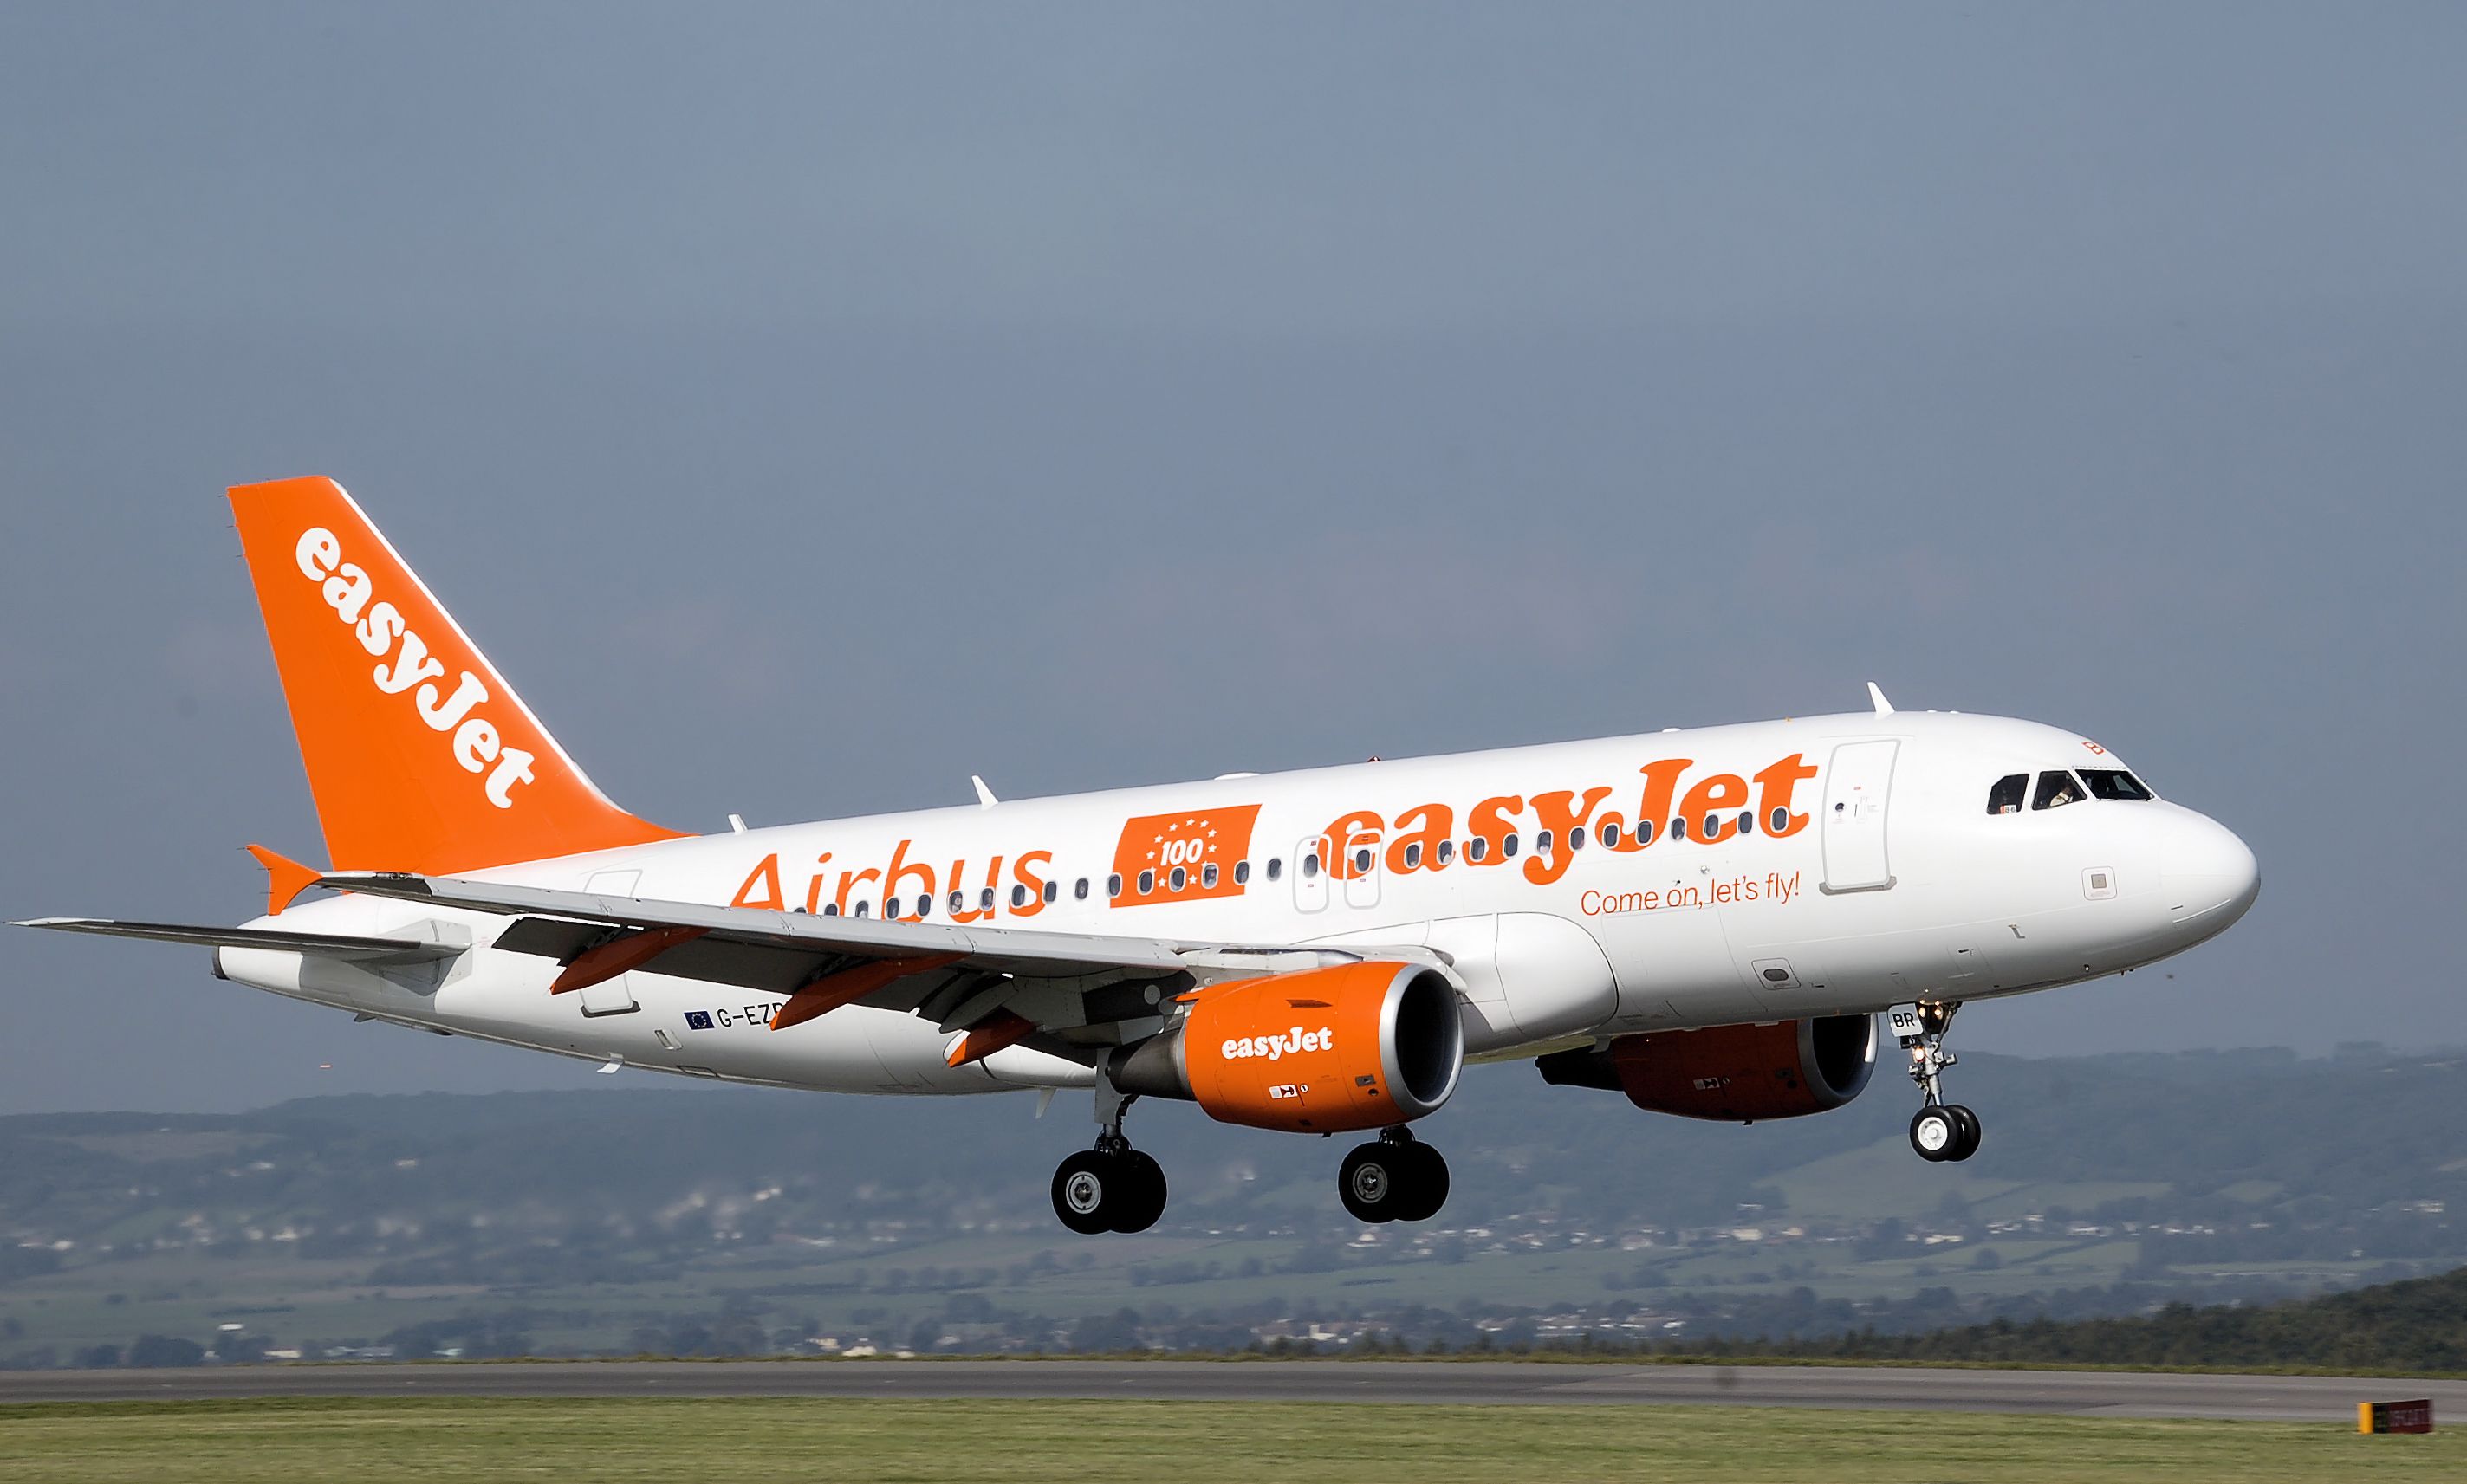 La huelga de Easyjet provoca 14 cancelaciones, 6 de ellas en el aeropuerto del Prat